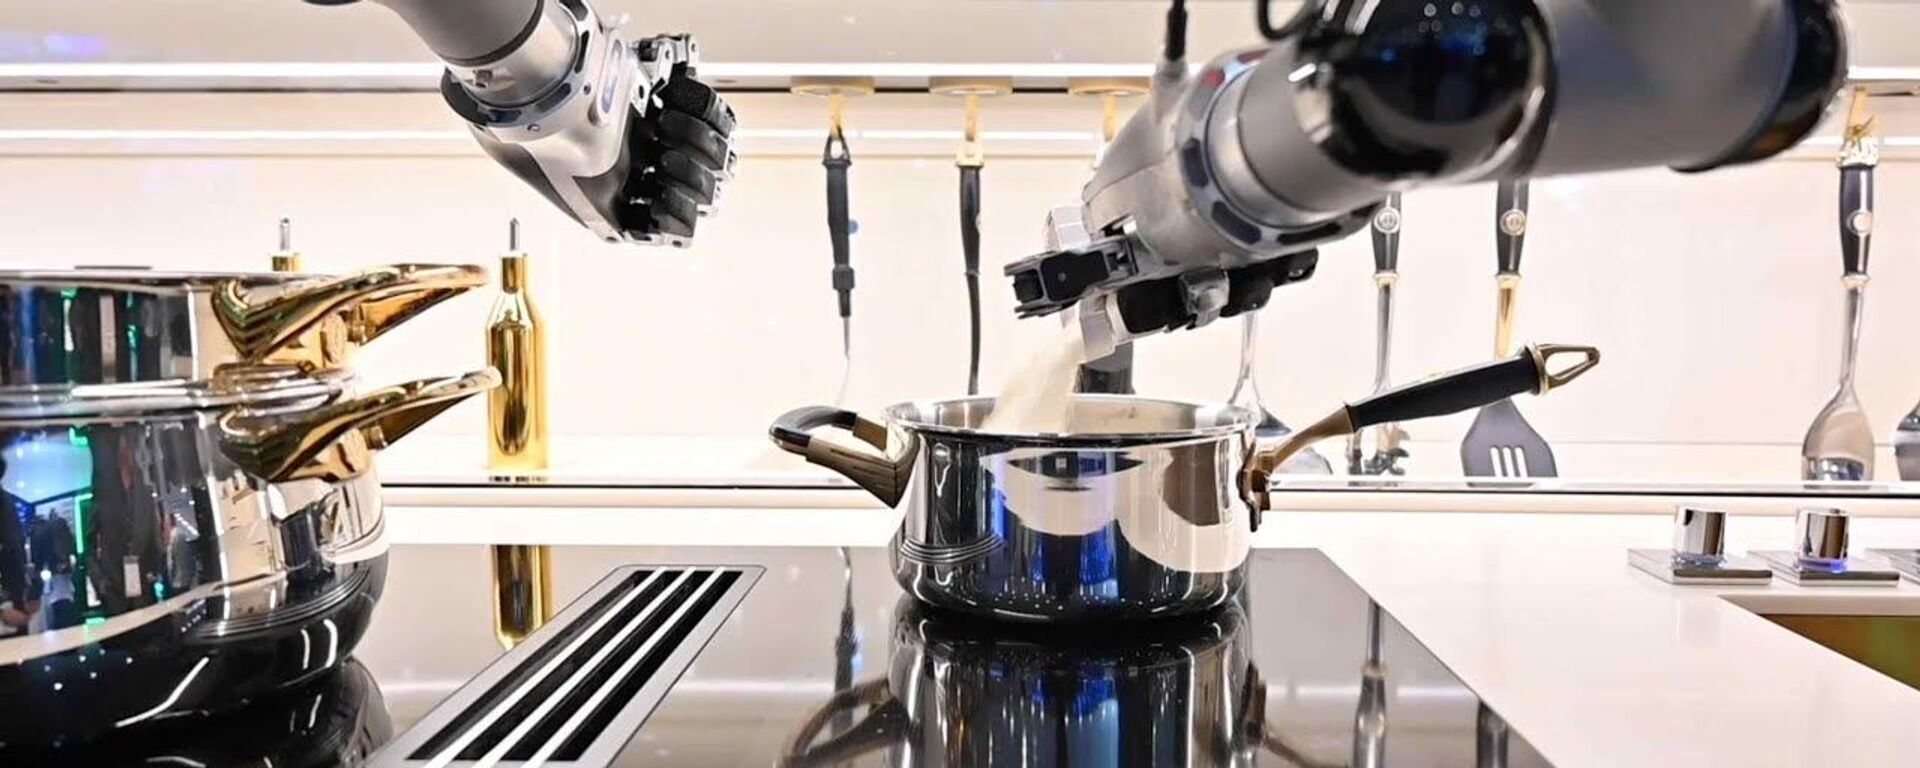 Создан робот, который готовит еду по 5 тыс рецептов и моет посуду — видео - Sputnik Тоҷикистон, 1920, 18.01.2021